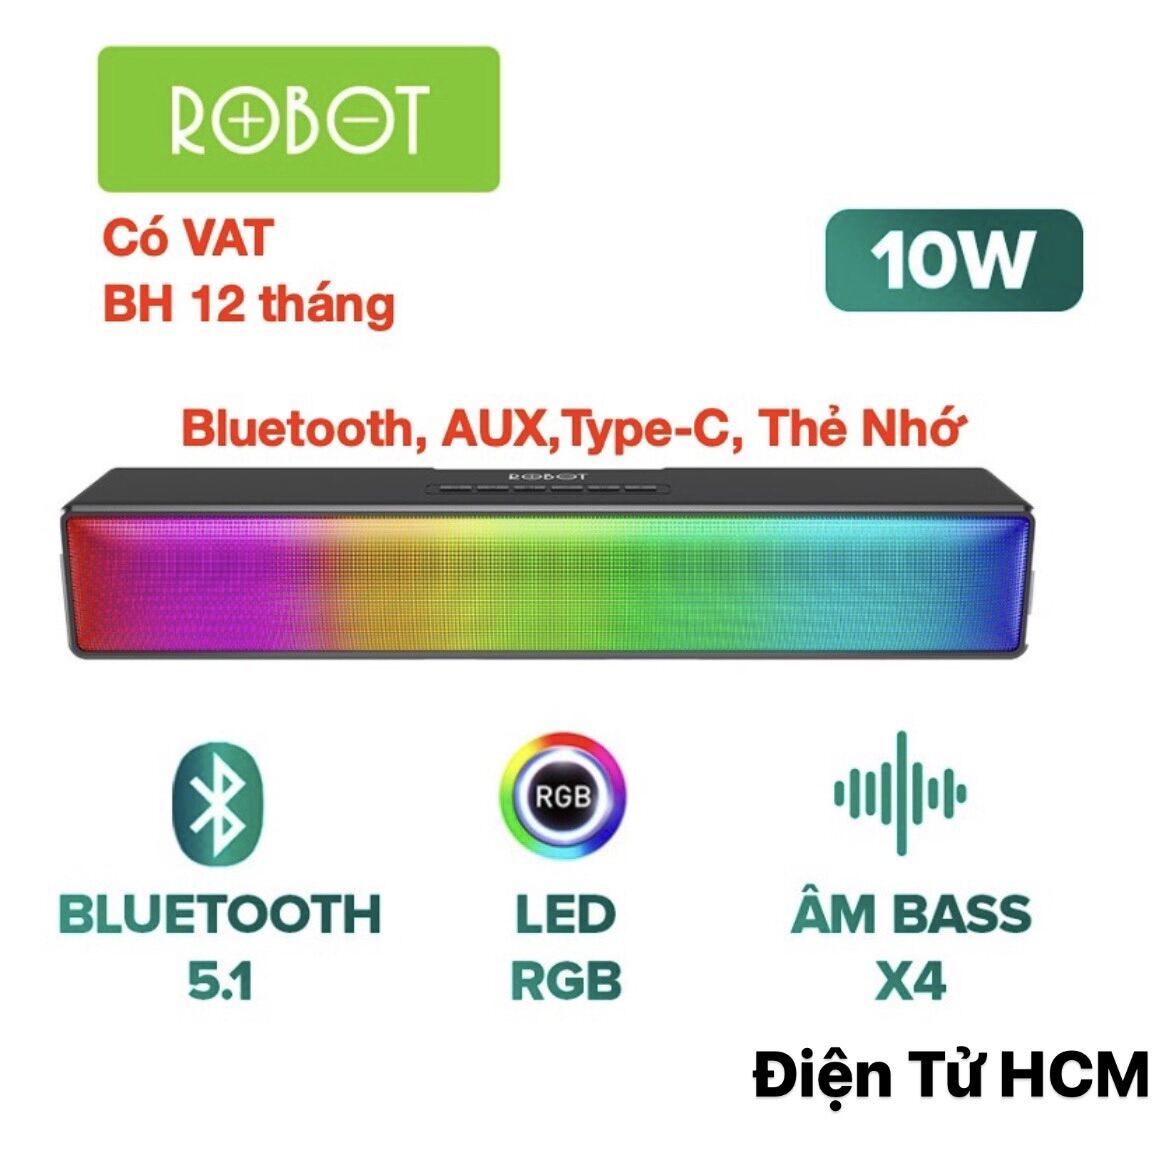 Loa Thanh Bluetooth Soundbar ROBOT RB580 10W Ultra Bass - Hiệu Ứng RGB